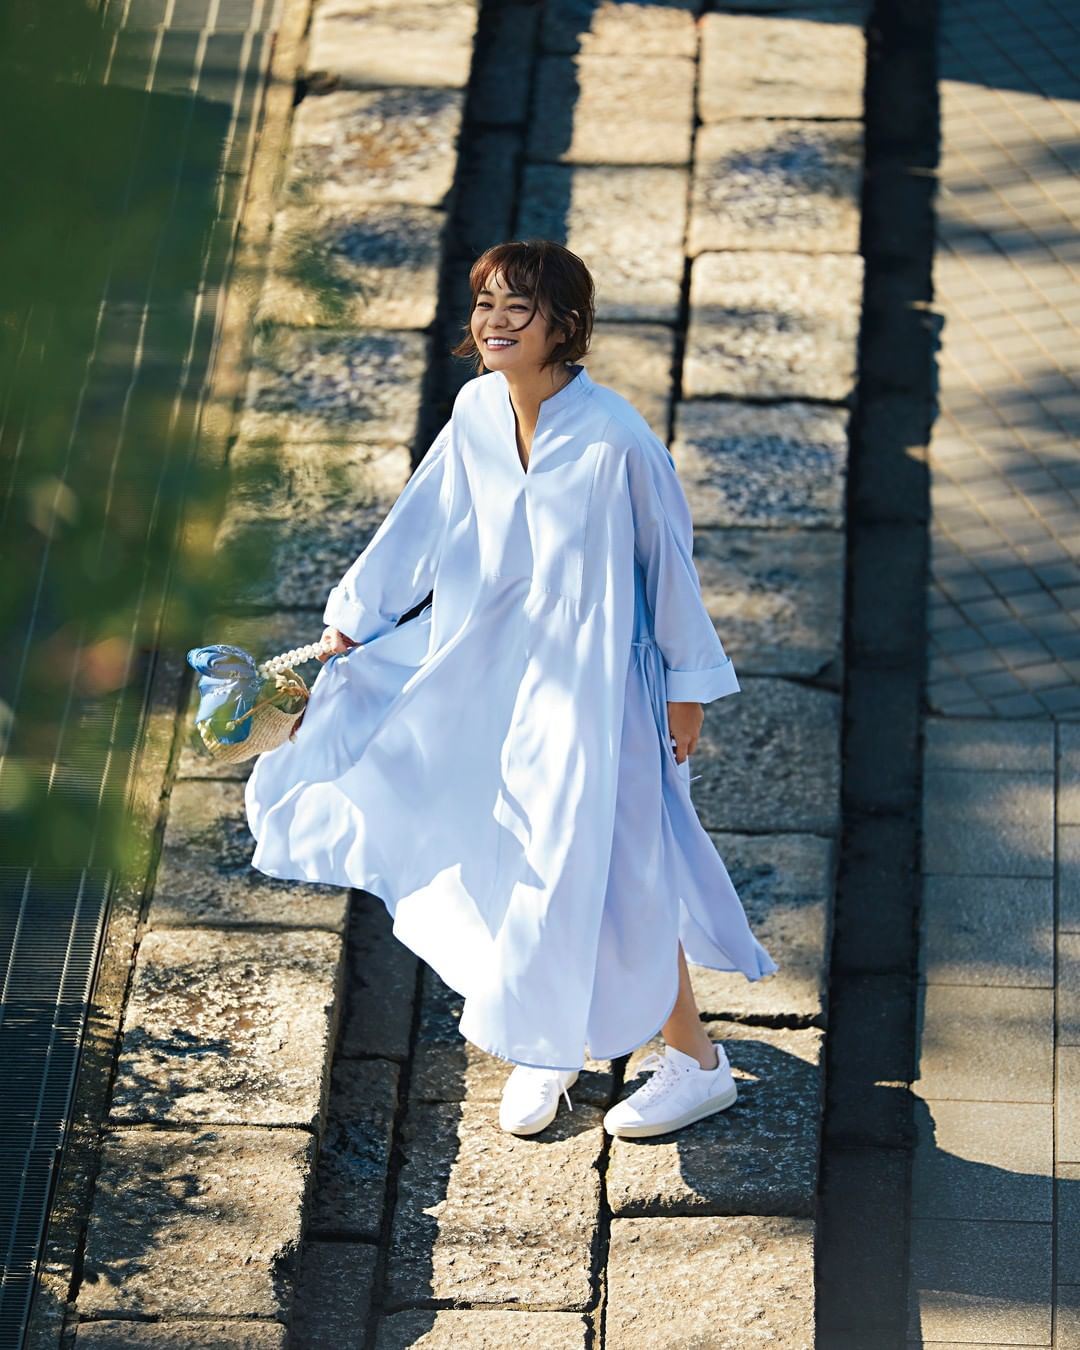 Leemagazine Lee3月号 Pick Up コーディネート まさに一枚で絵になる 風にゆれるワンピース シルエットも素材感も ゆれる服 の名にふさわしい Wacoca Japan People Life Style